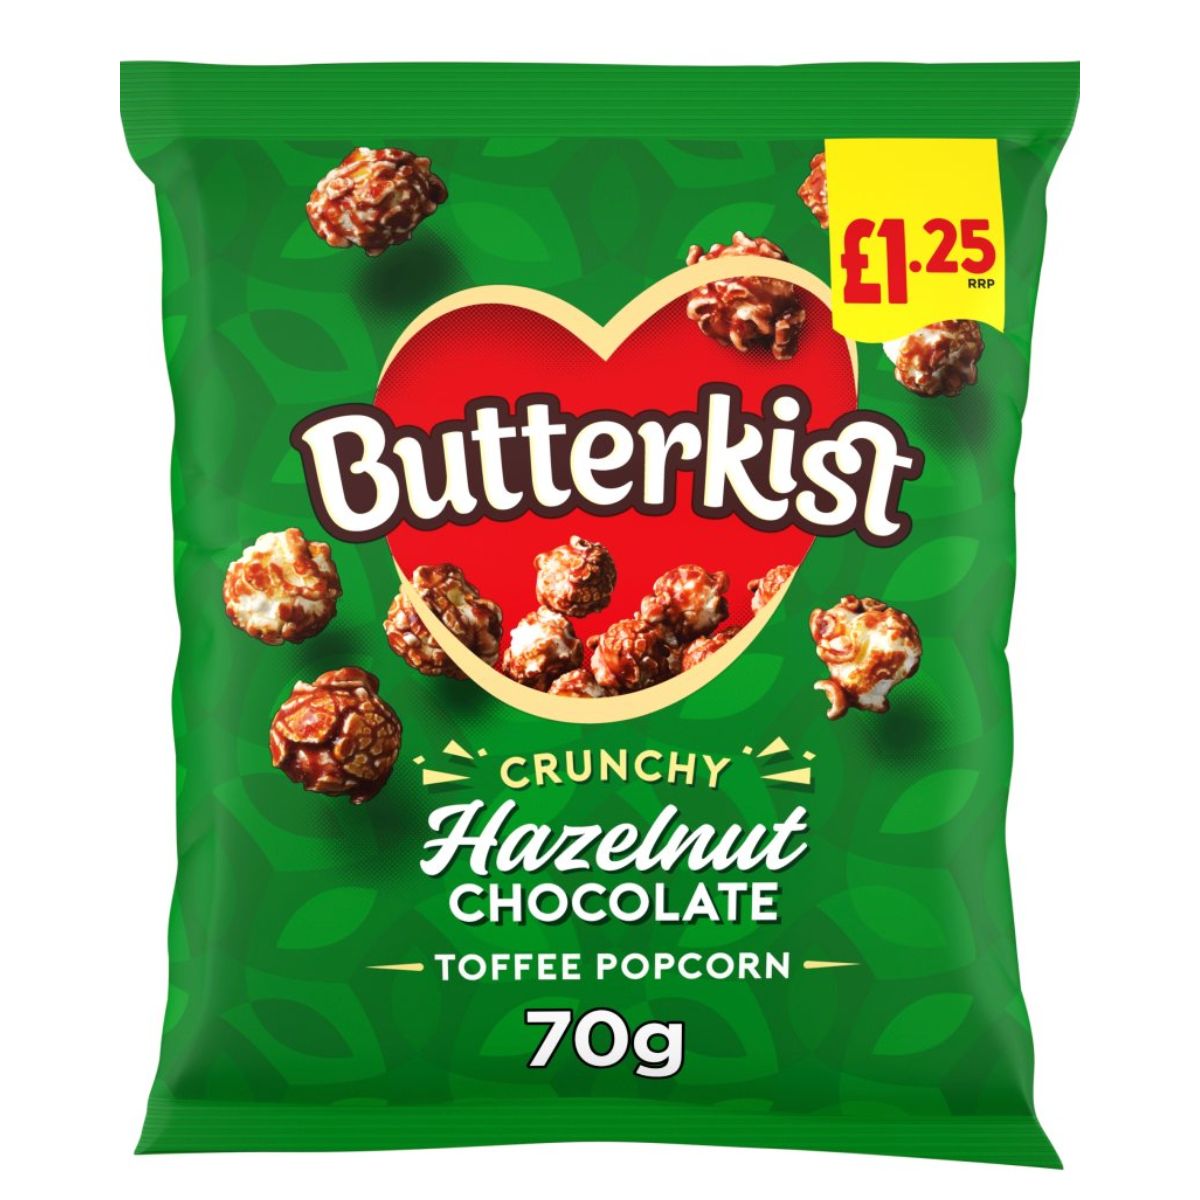 Butterkist - Hazelnut Chocolate Toffee Popcorn - 70g.